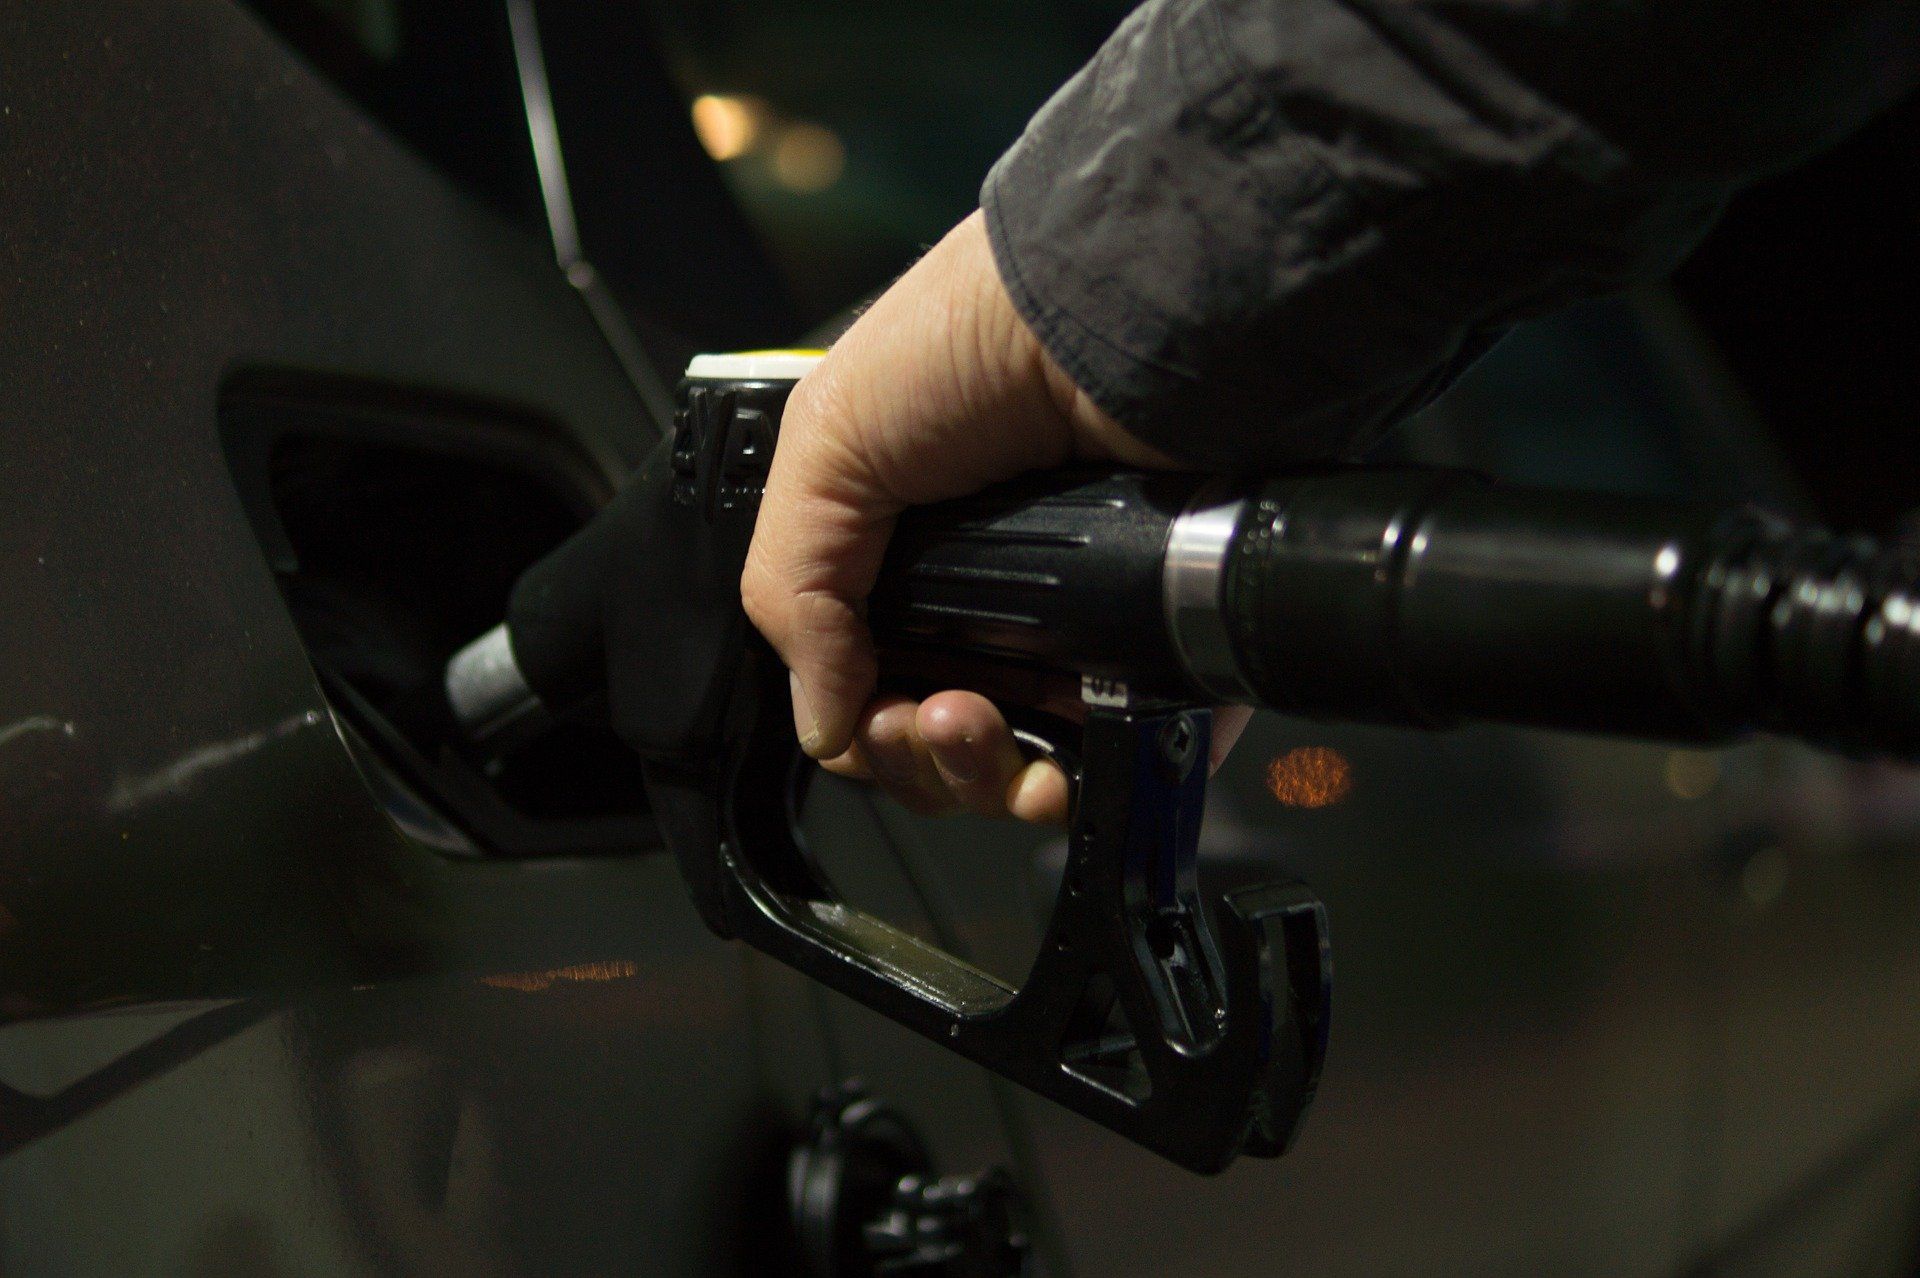 Fuel price June 13, 2022: Petrol Rs 96.72, diesel Rs 89.62 in Delhi